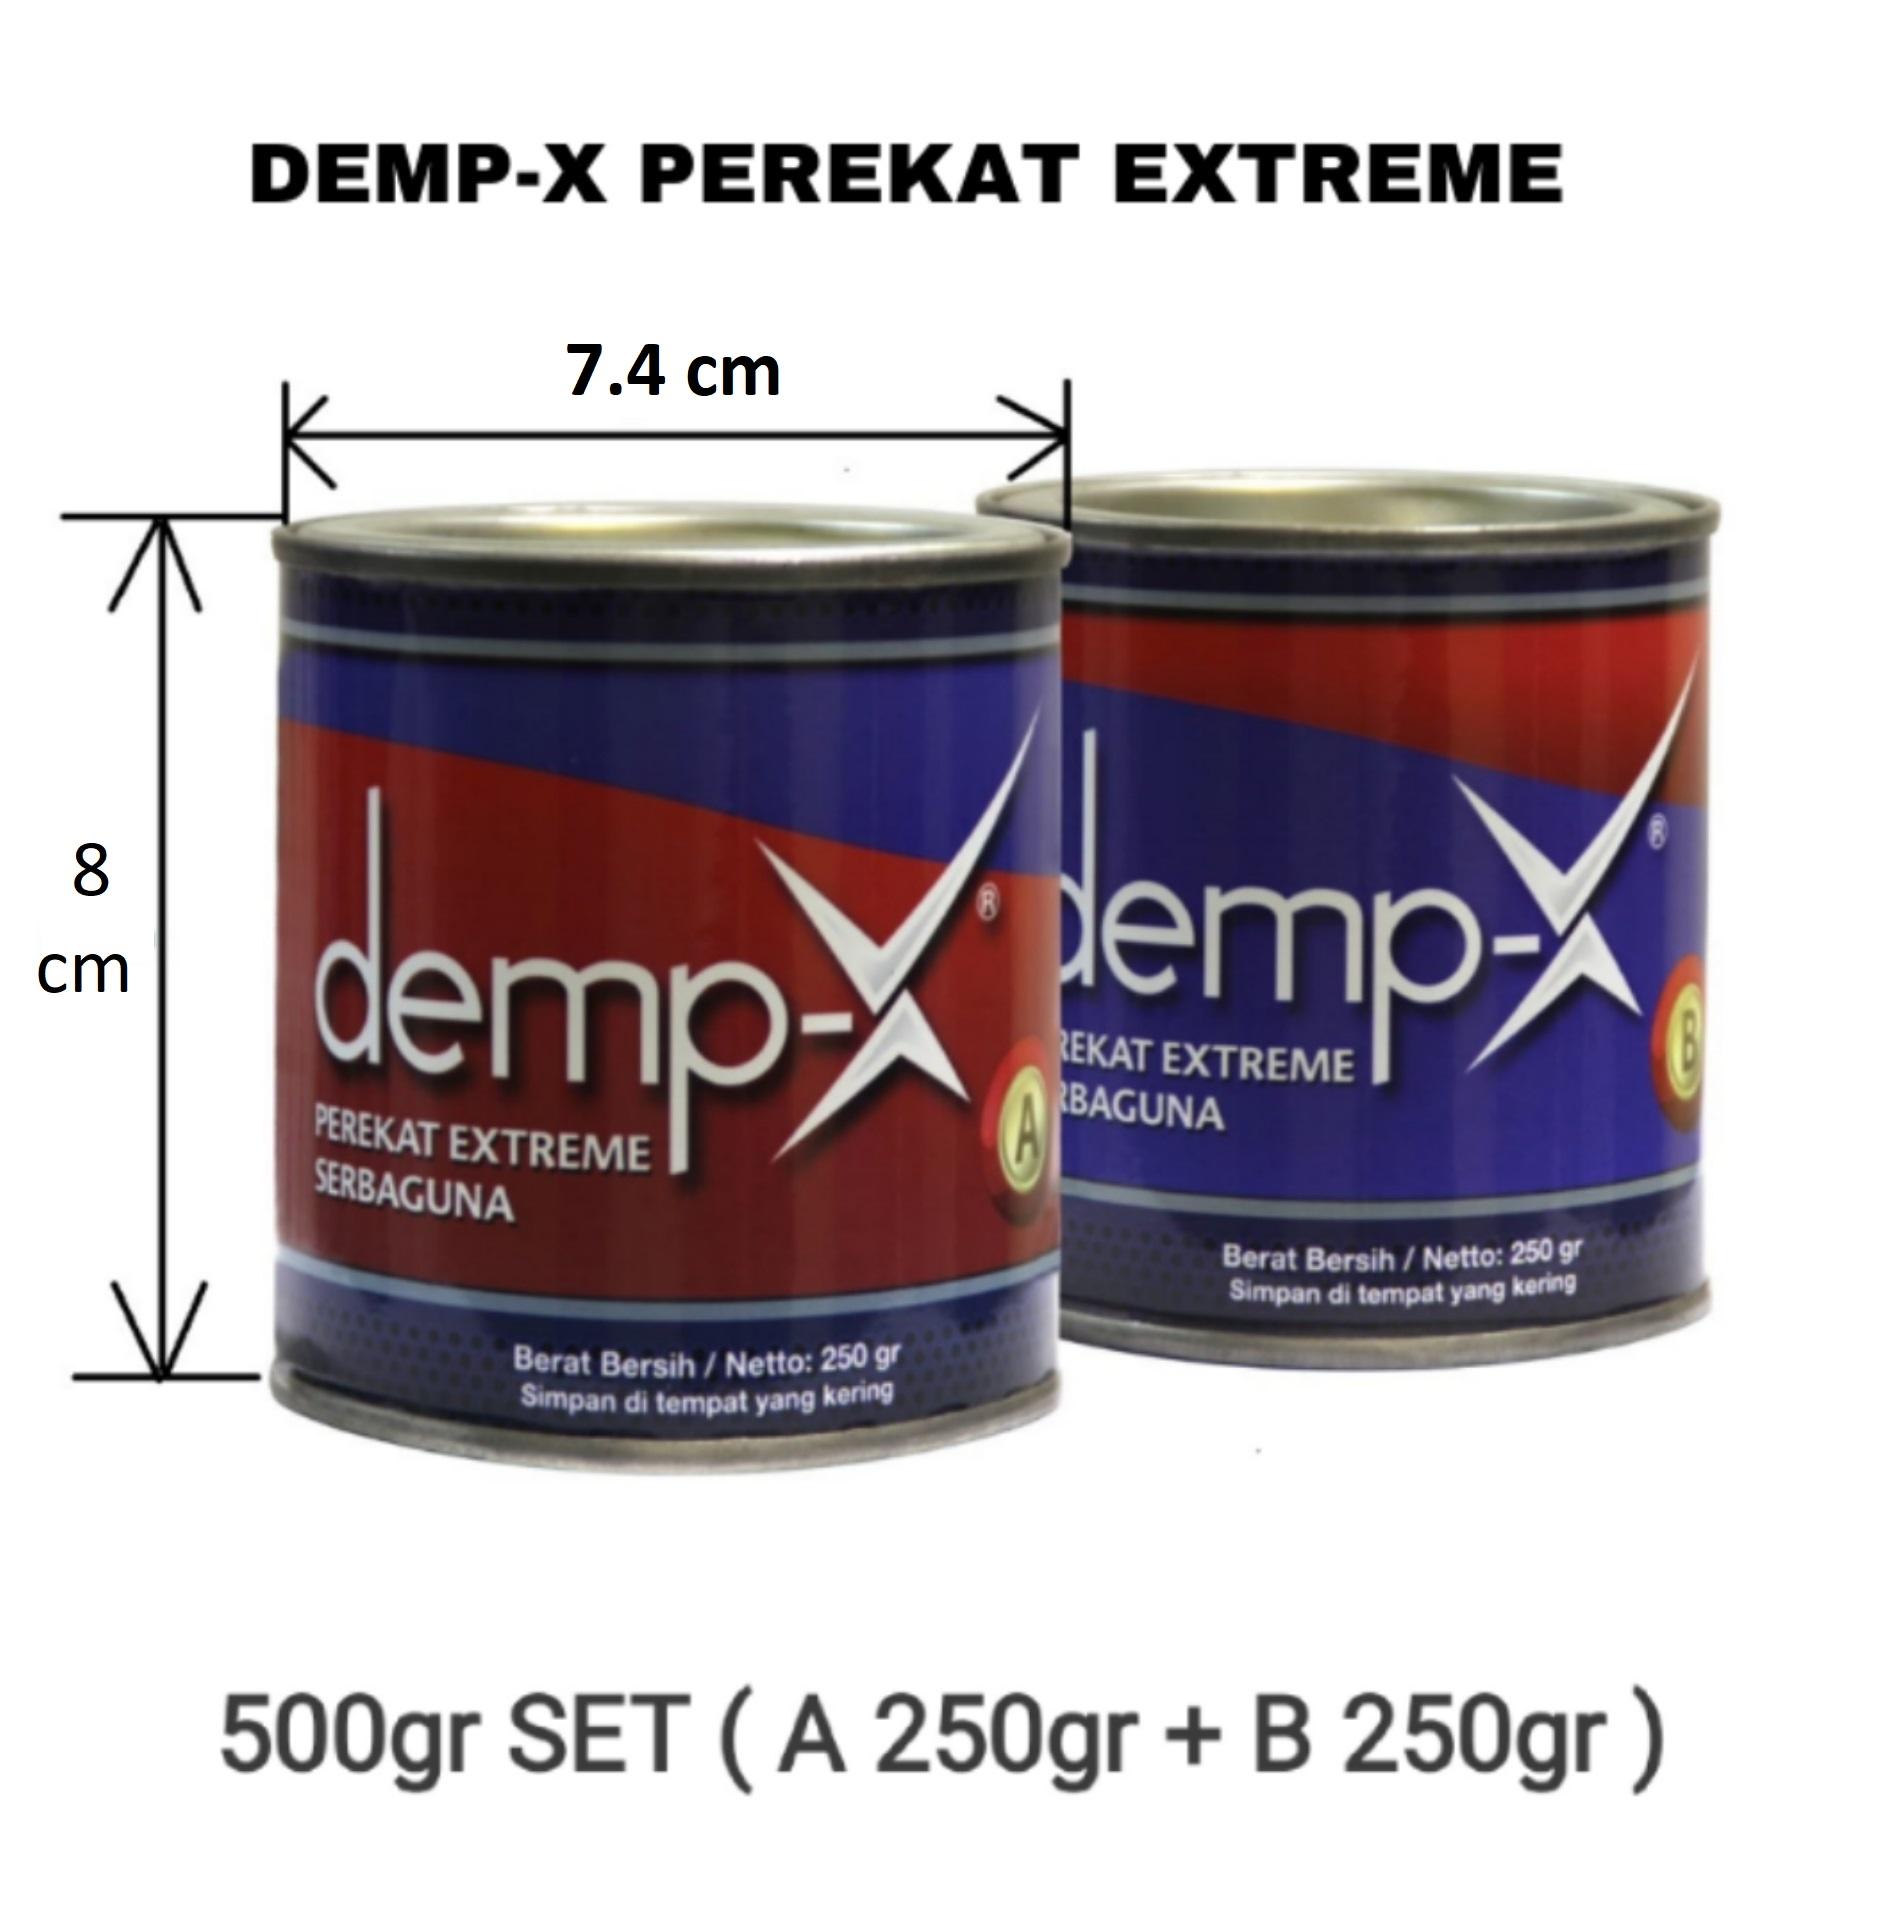 Kemasan dan Harga DEMP-X Perekat Extreme 500gr SET